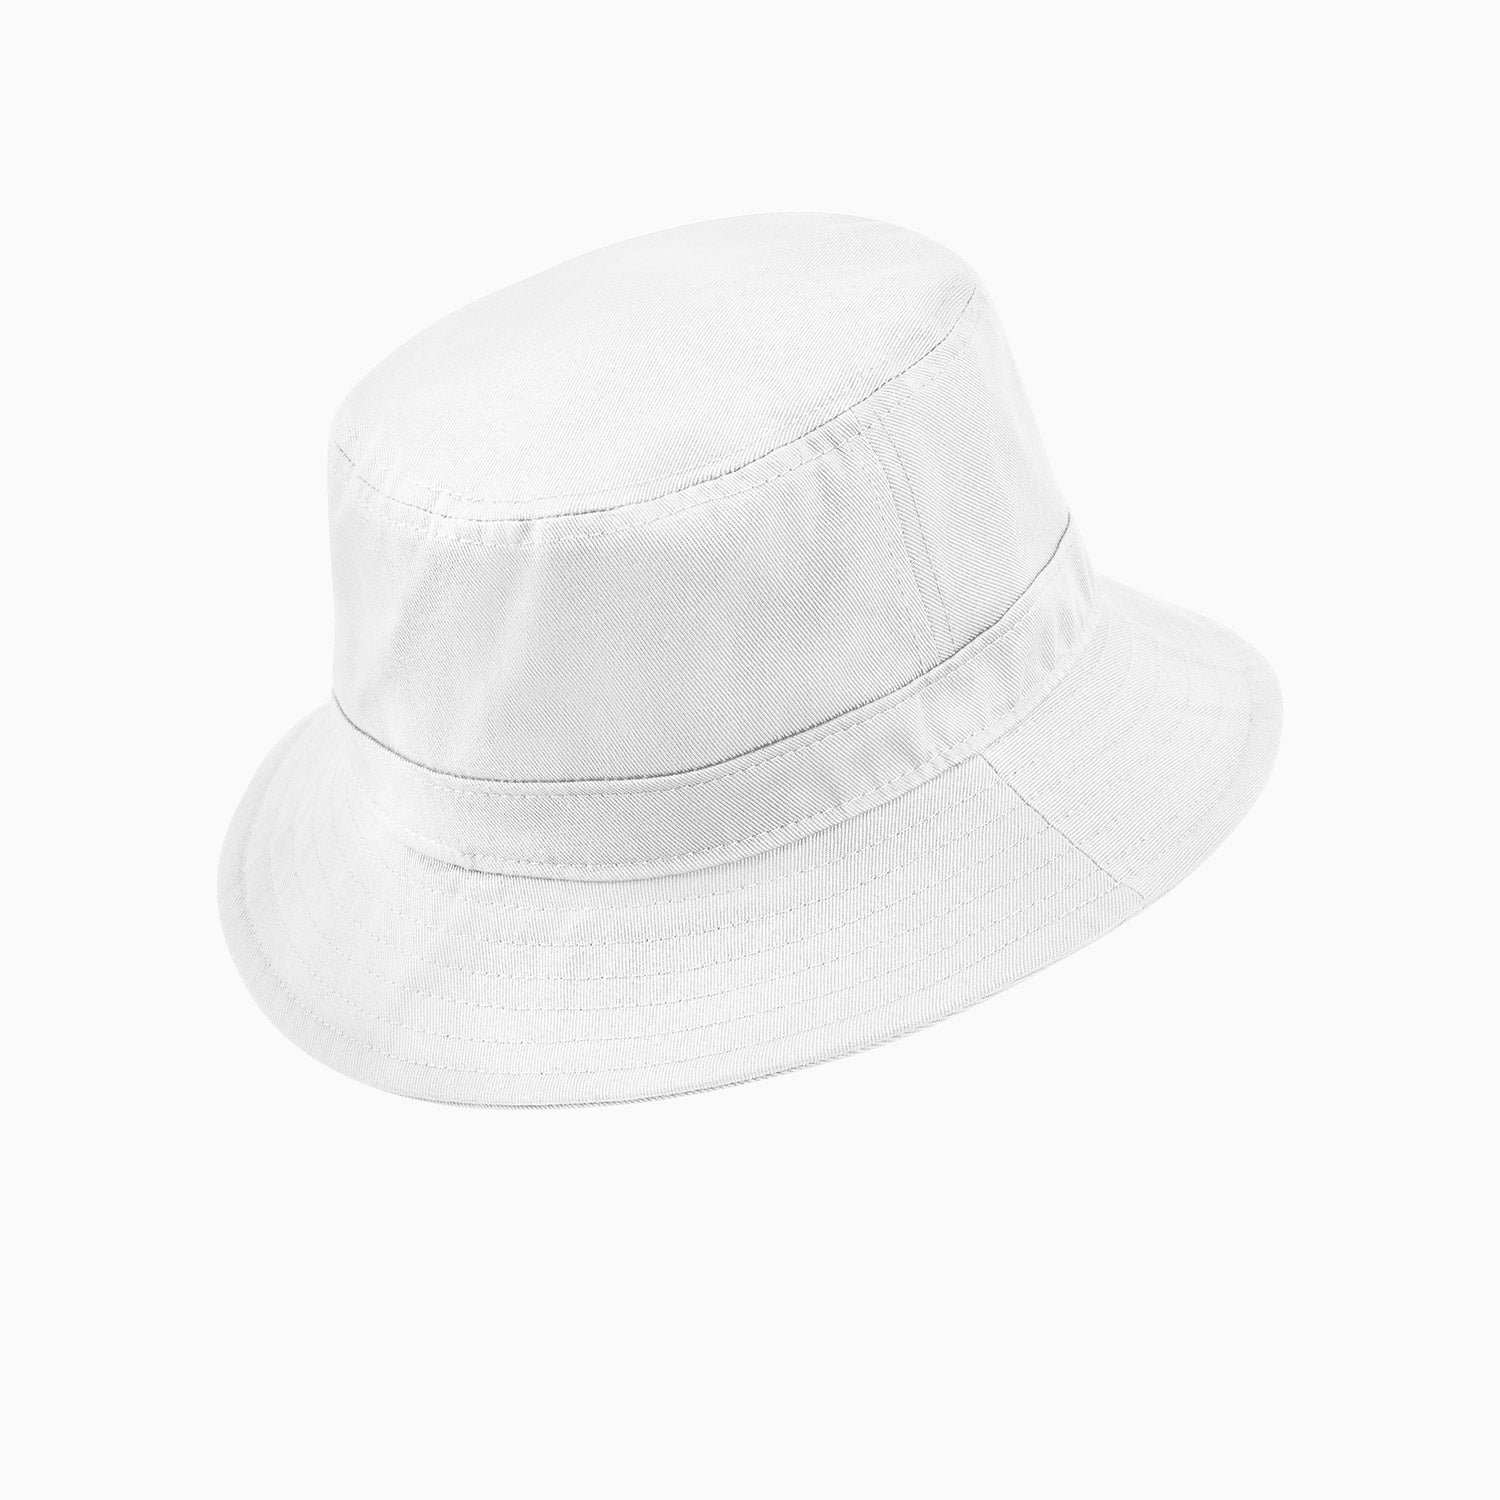 nike-kids-bucket-core-hat-cz6125-100